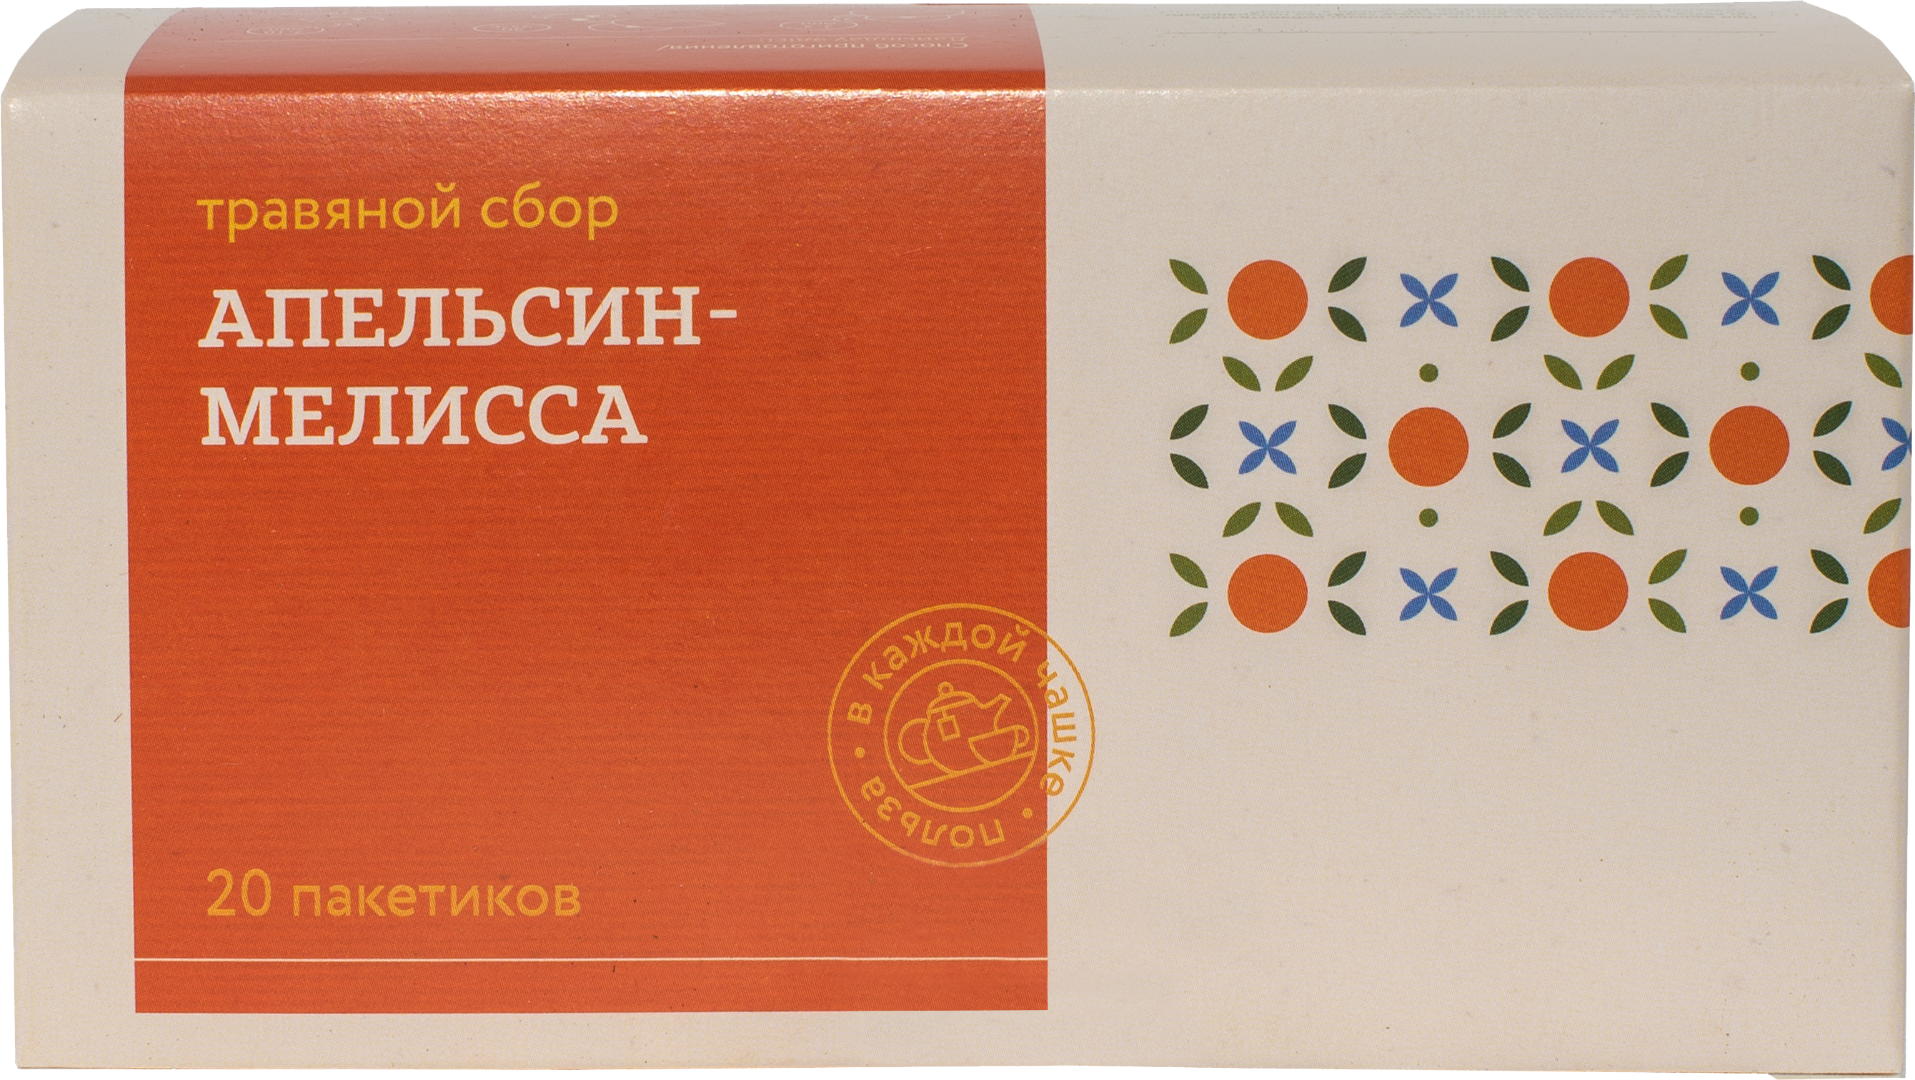 Травяной сбор ТРАВЫ И ПЧЕЛЫ с апельсином и мелиссой 40 г 202г картонная коробка